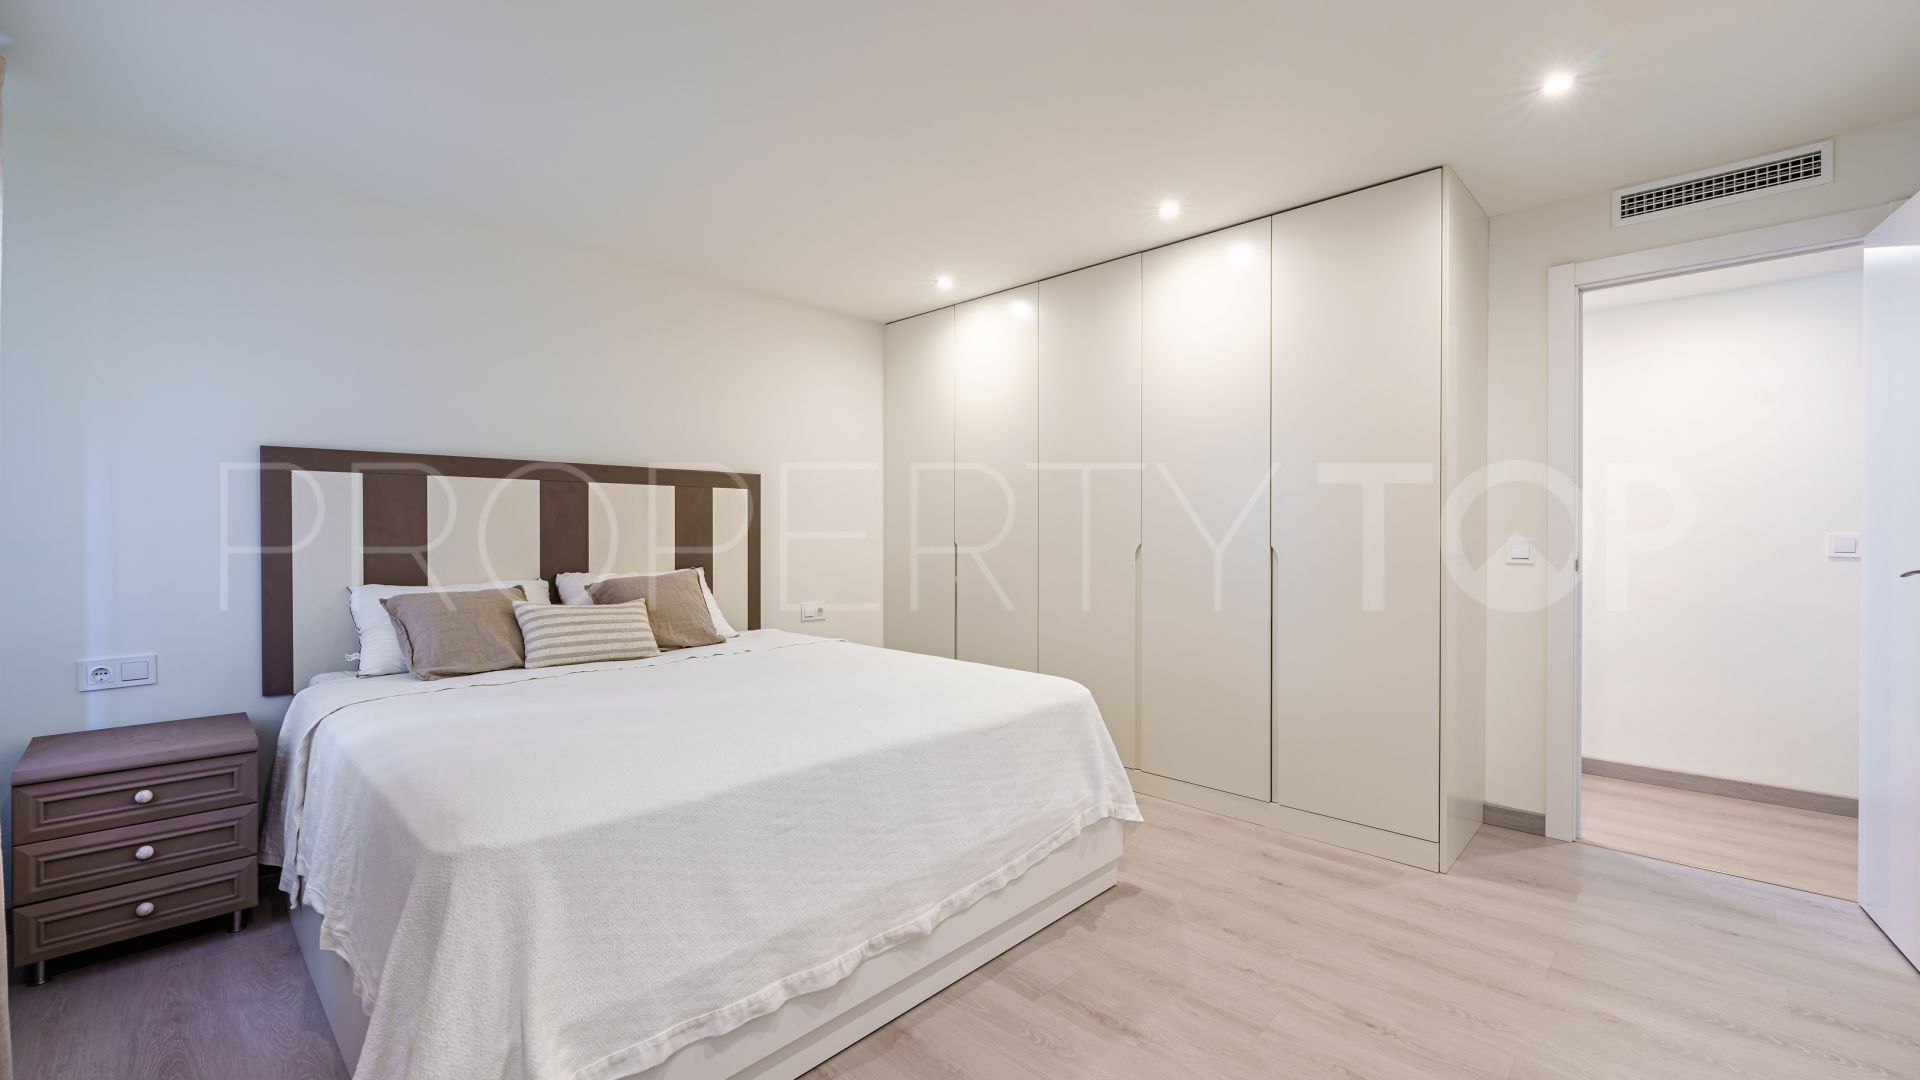 3 bedrooms building in La Malagueta - La Caleta for sale